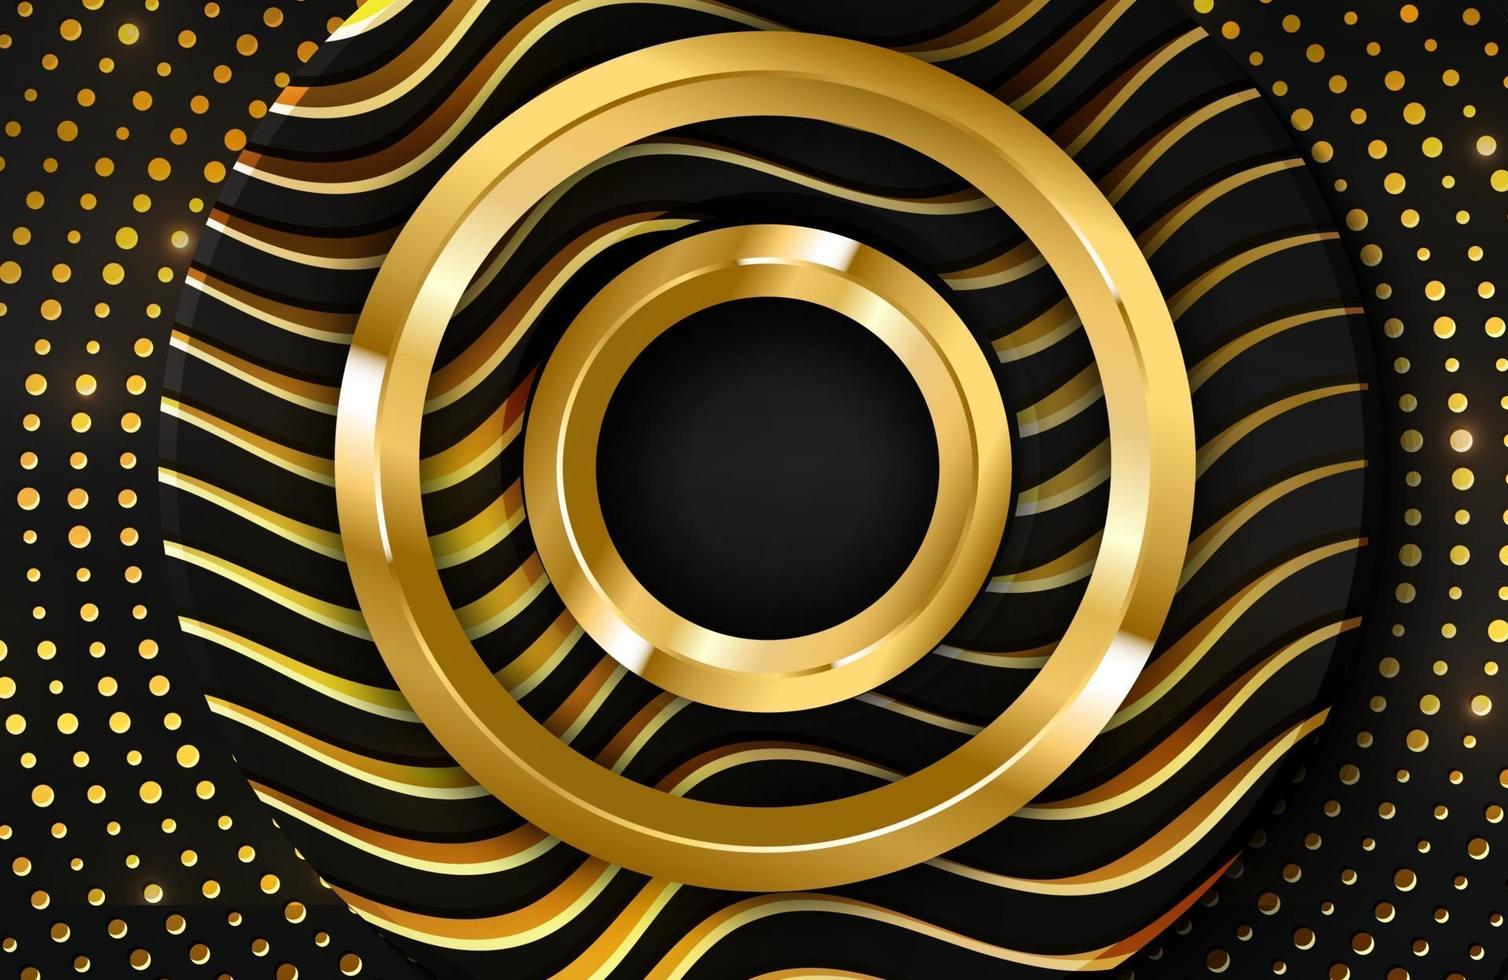 Fondo realista 3d de lujo con forma de círculo dorado ilustración vectorial de formas de círculo negro texturizadas con líneas onduladas doradas vector